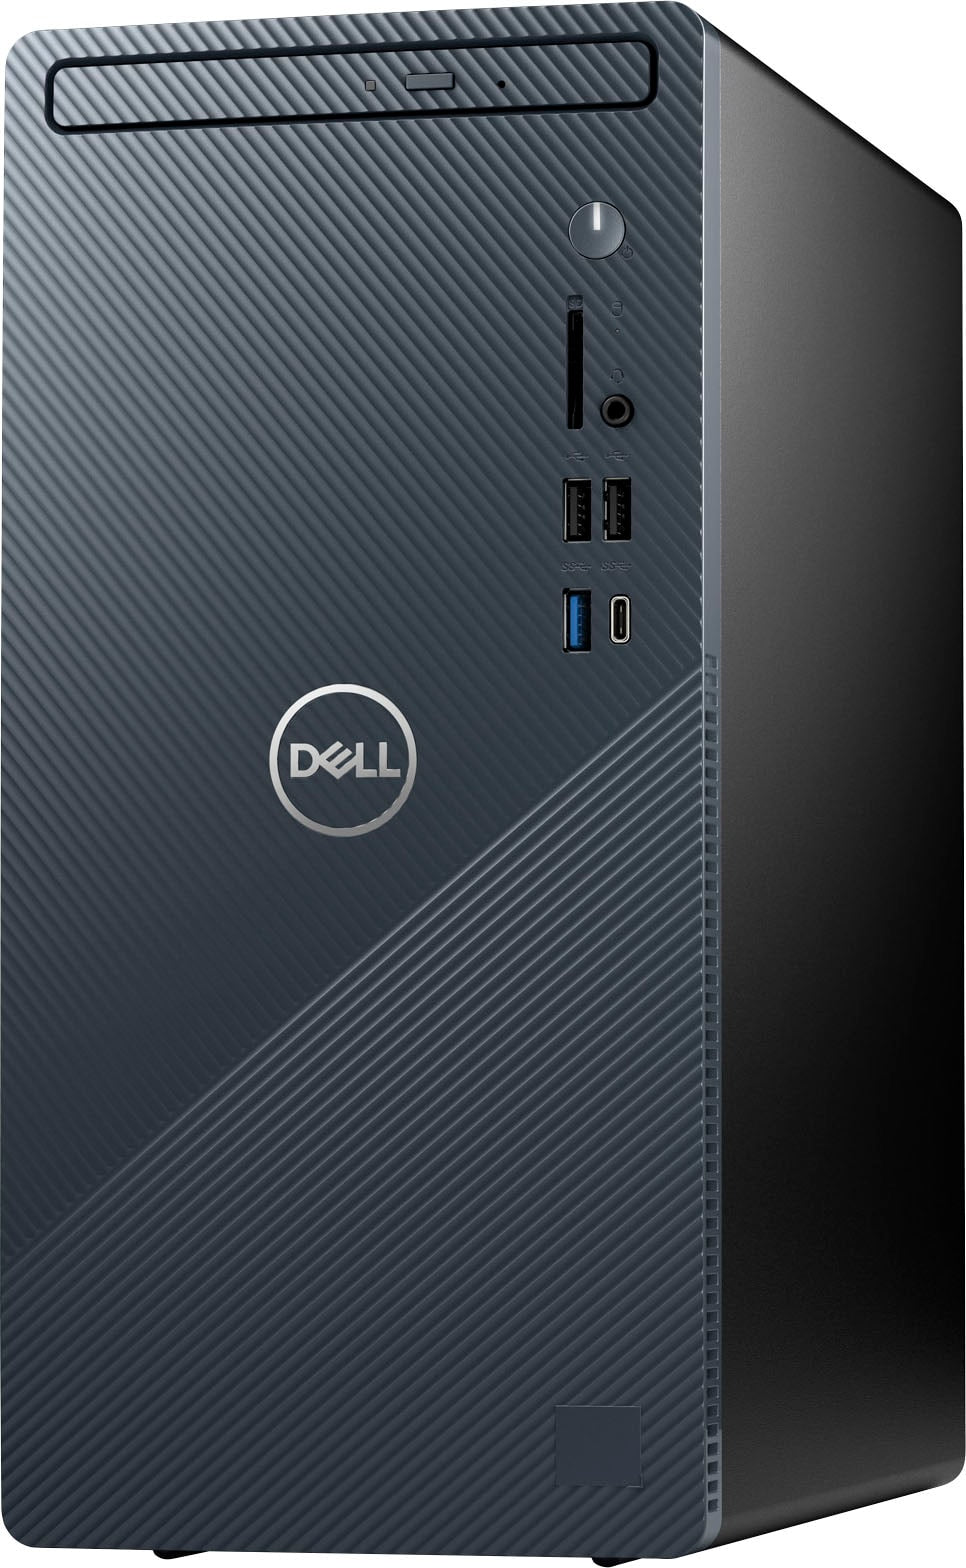 Dell - Inspiron Compact Desktop - Intel Core i5-12400 - 12GB Memory - 256GB SSD - Mist Blue_2